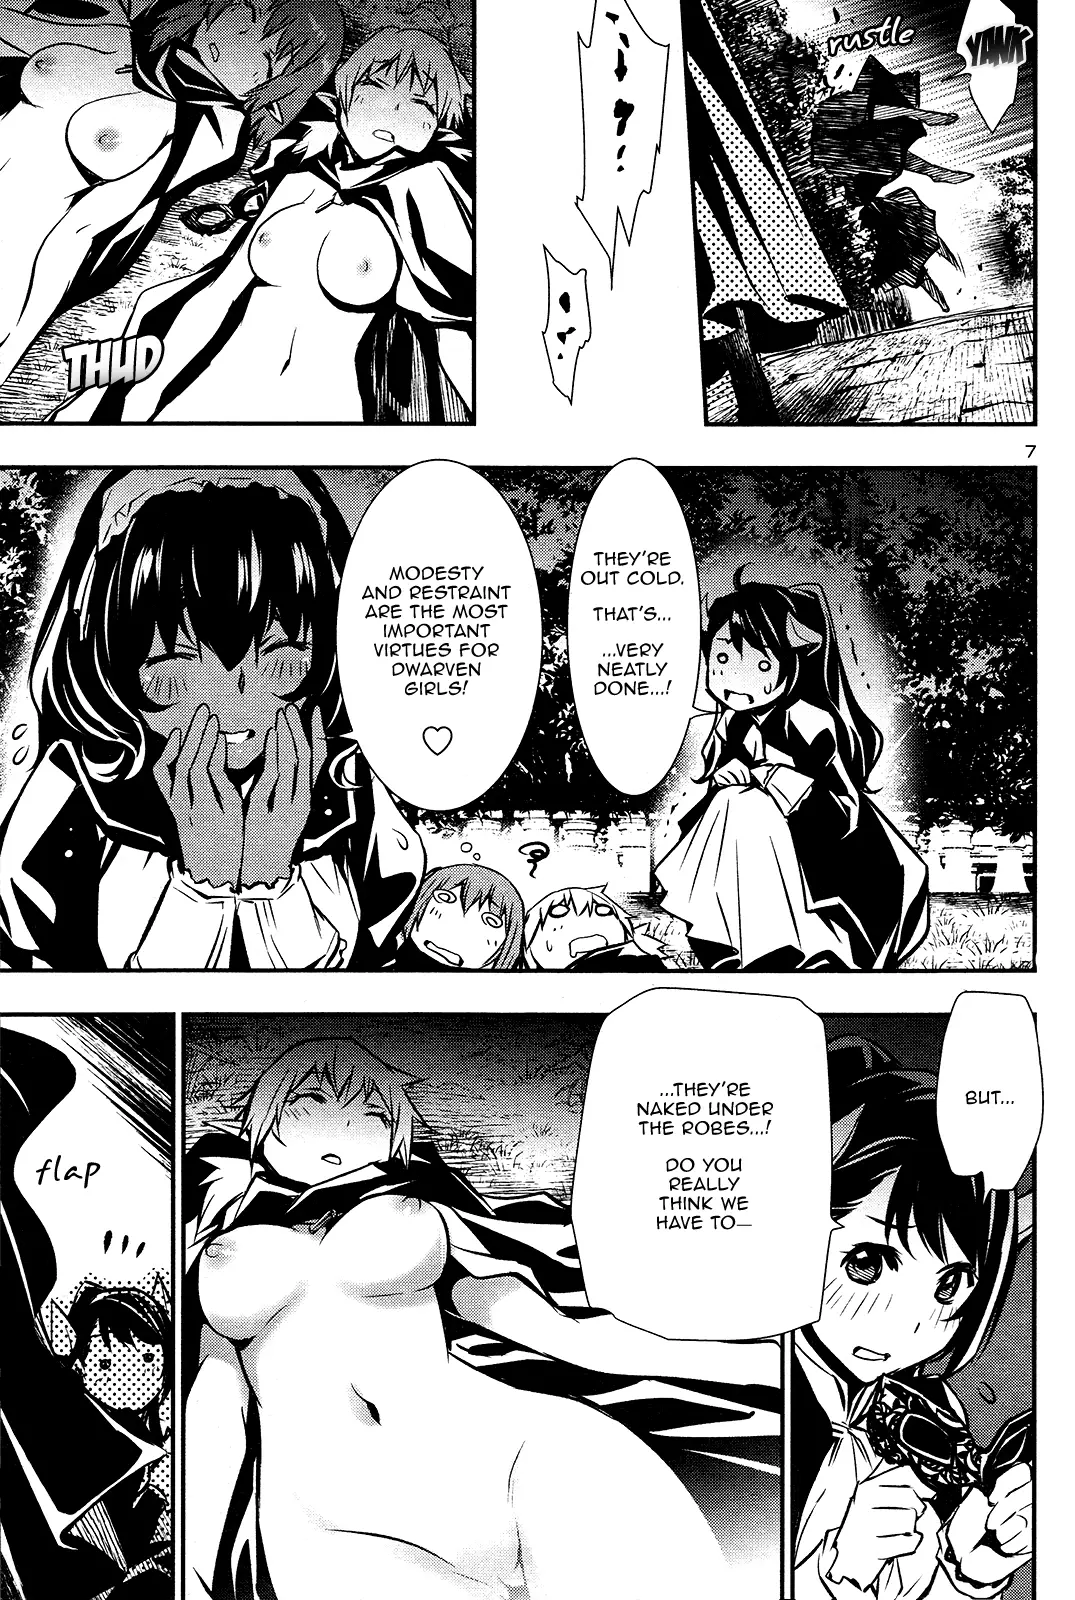 Shinju no Nectar - 35 page 7